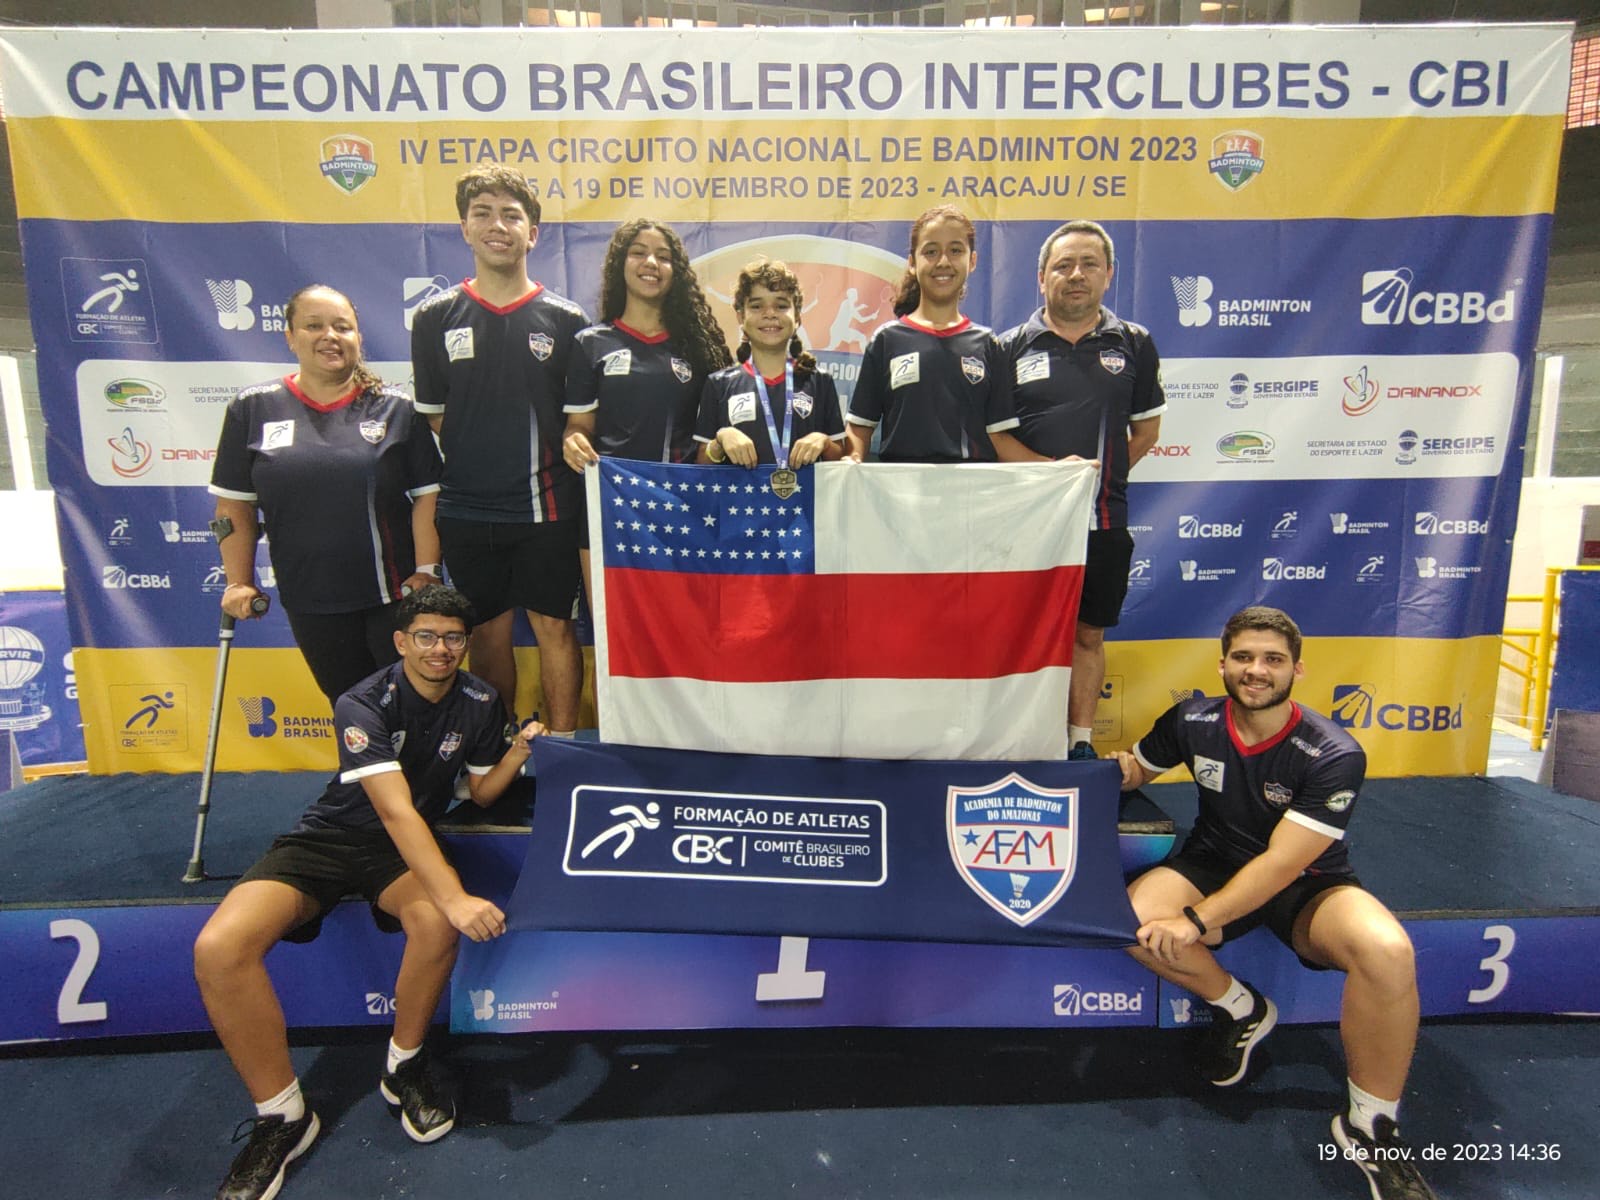 Campeonato Brasileiro Interclubes de Badminton